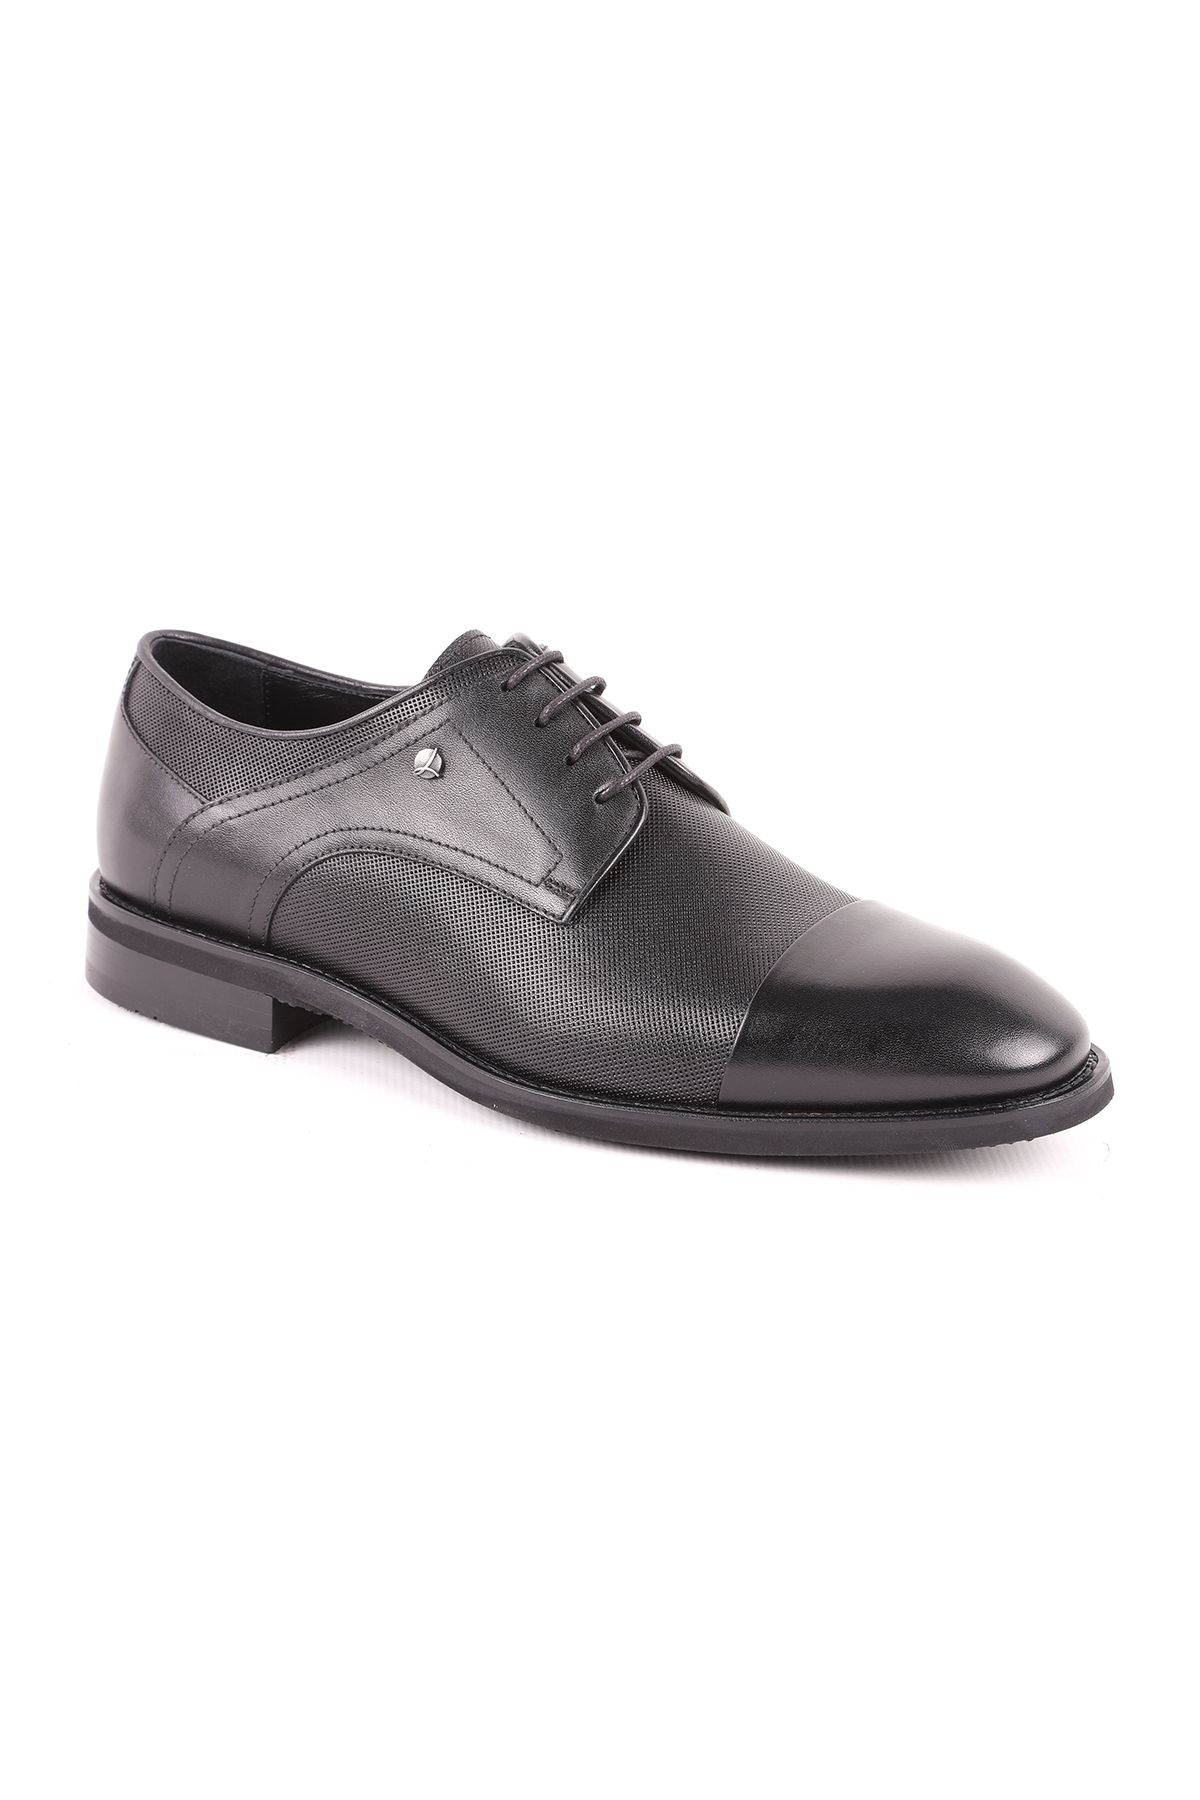 Libero L5182 Deri Erkek Klasik Ayakkabı Siyah